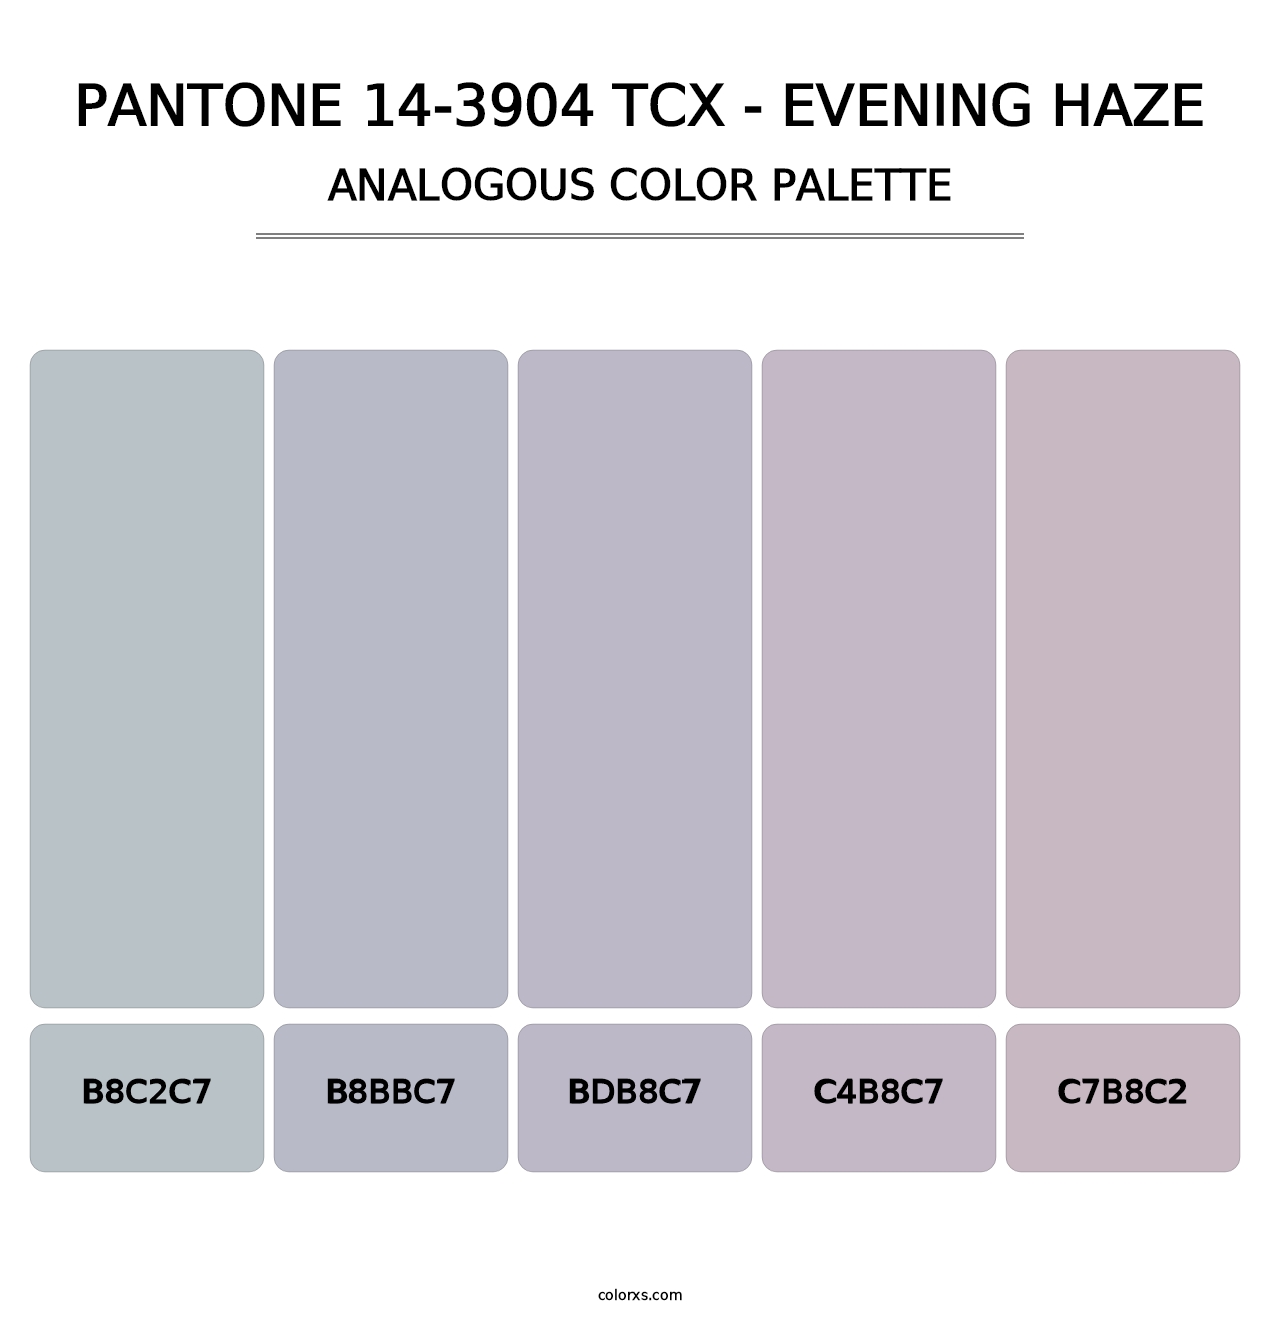 PANTONE 14-3904 TCX - Evening Haze - Analogous Color Palette